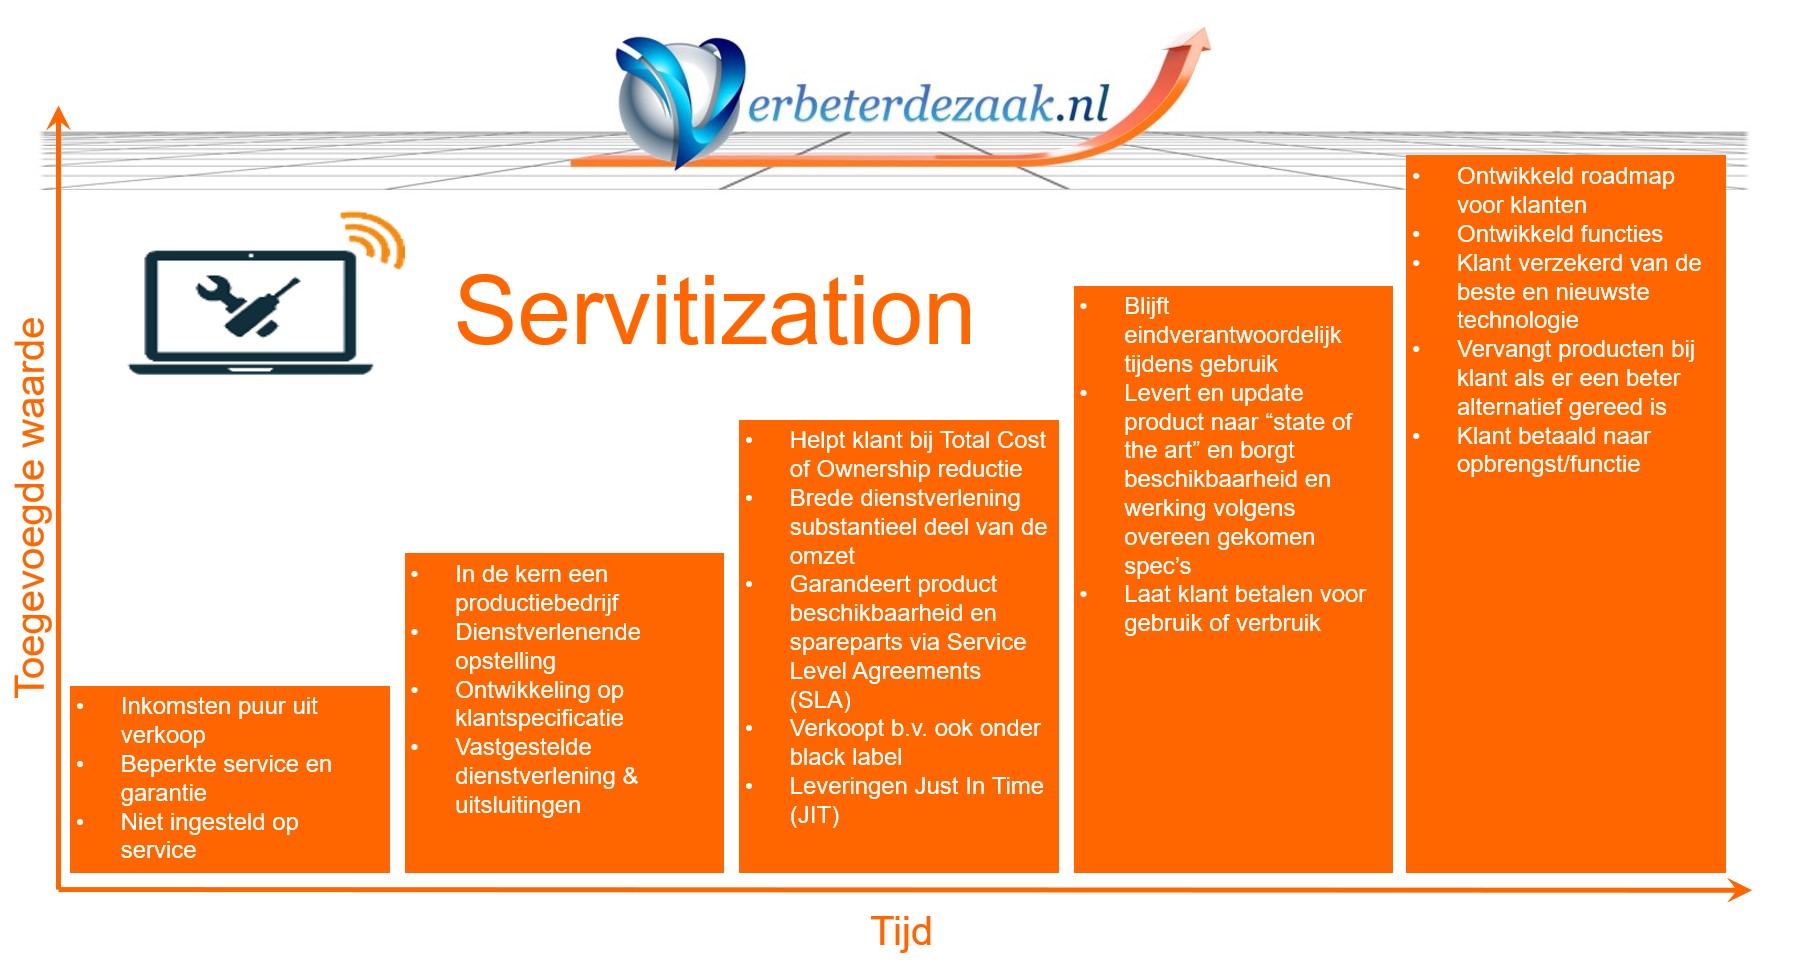 Servitization